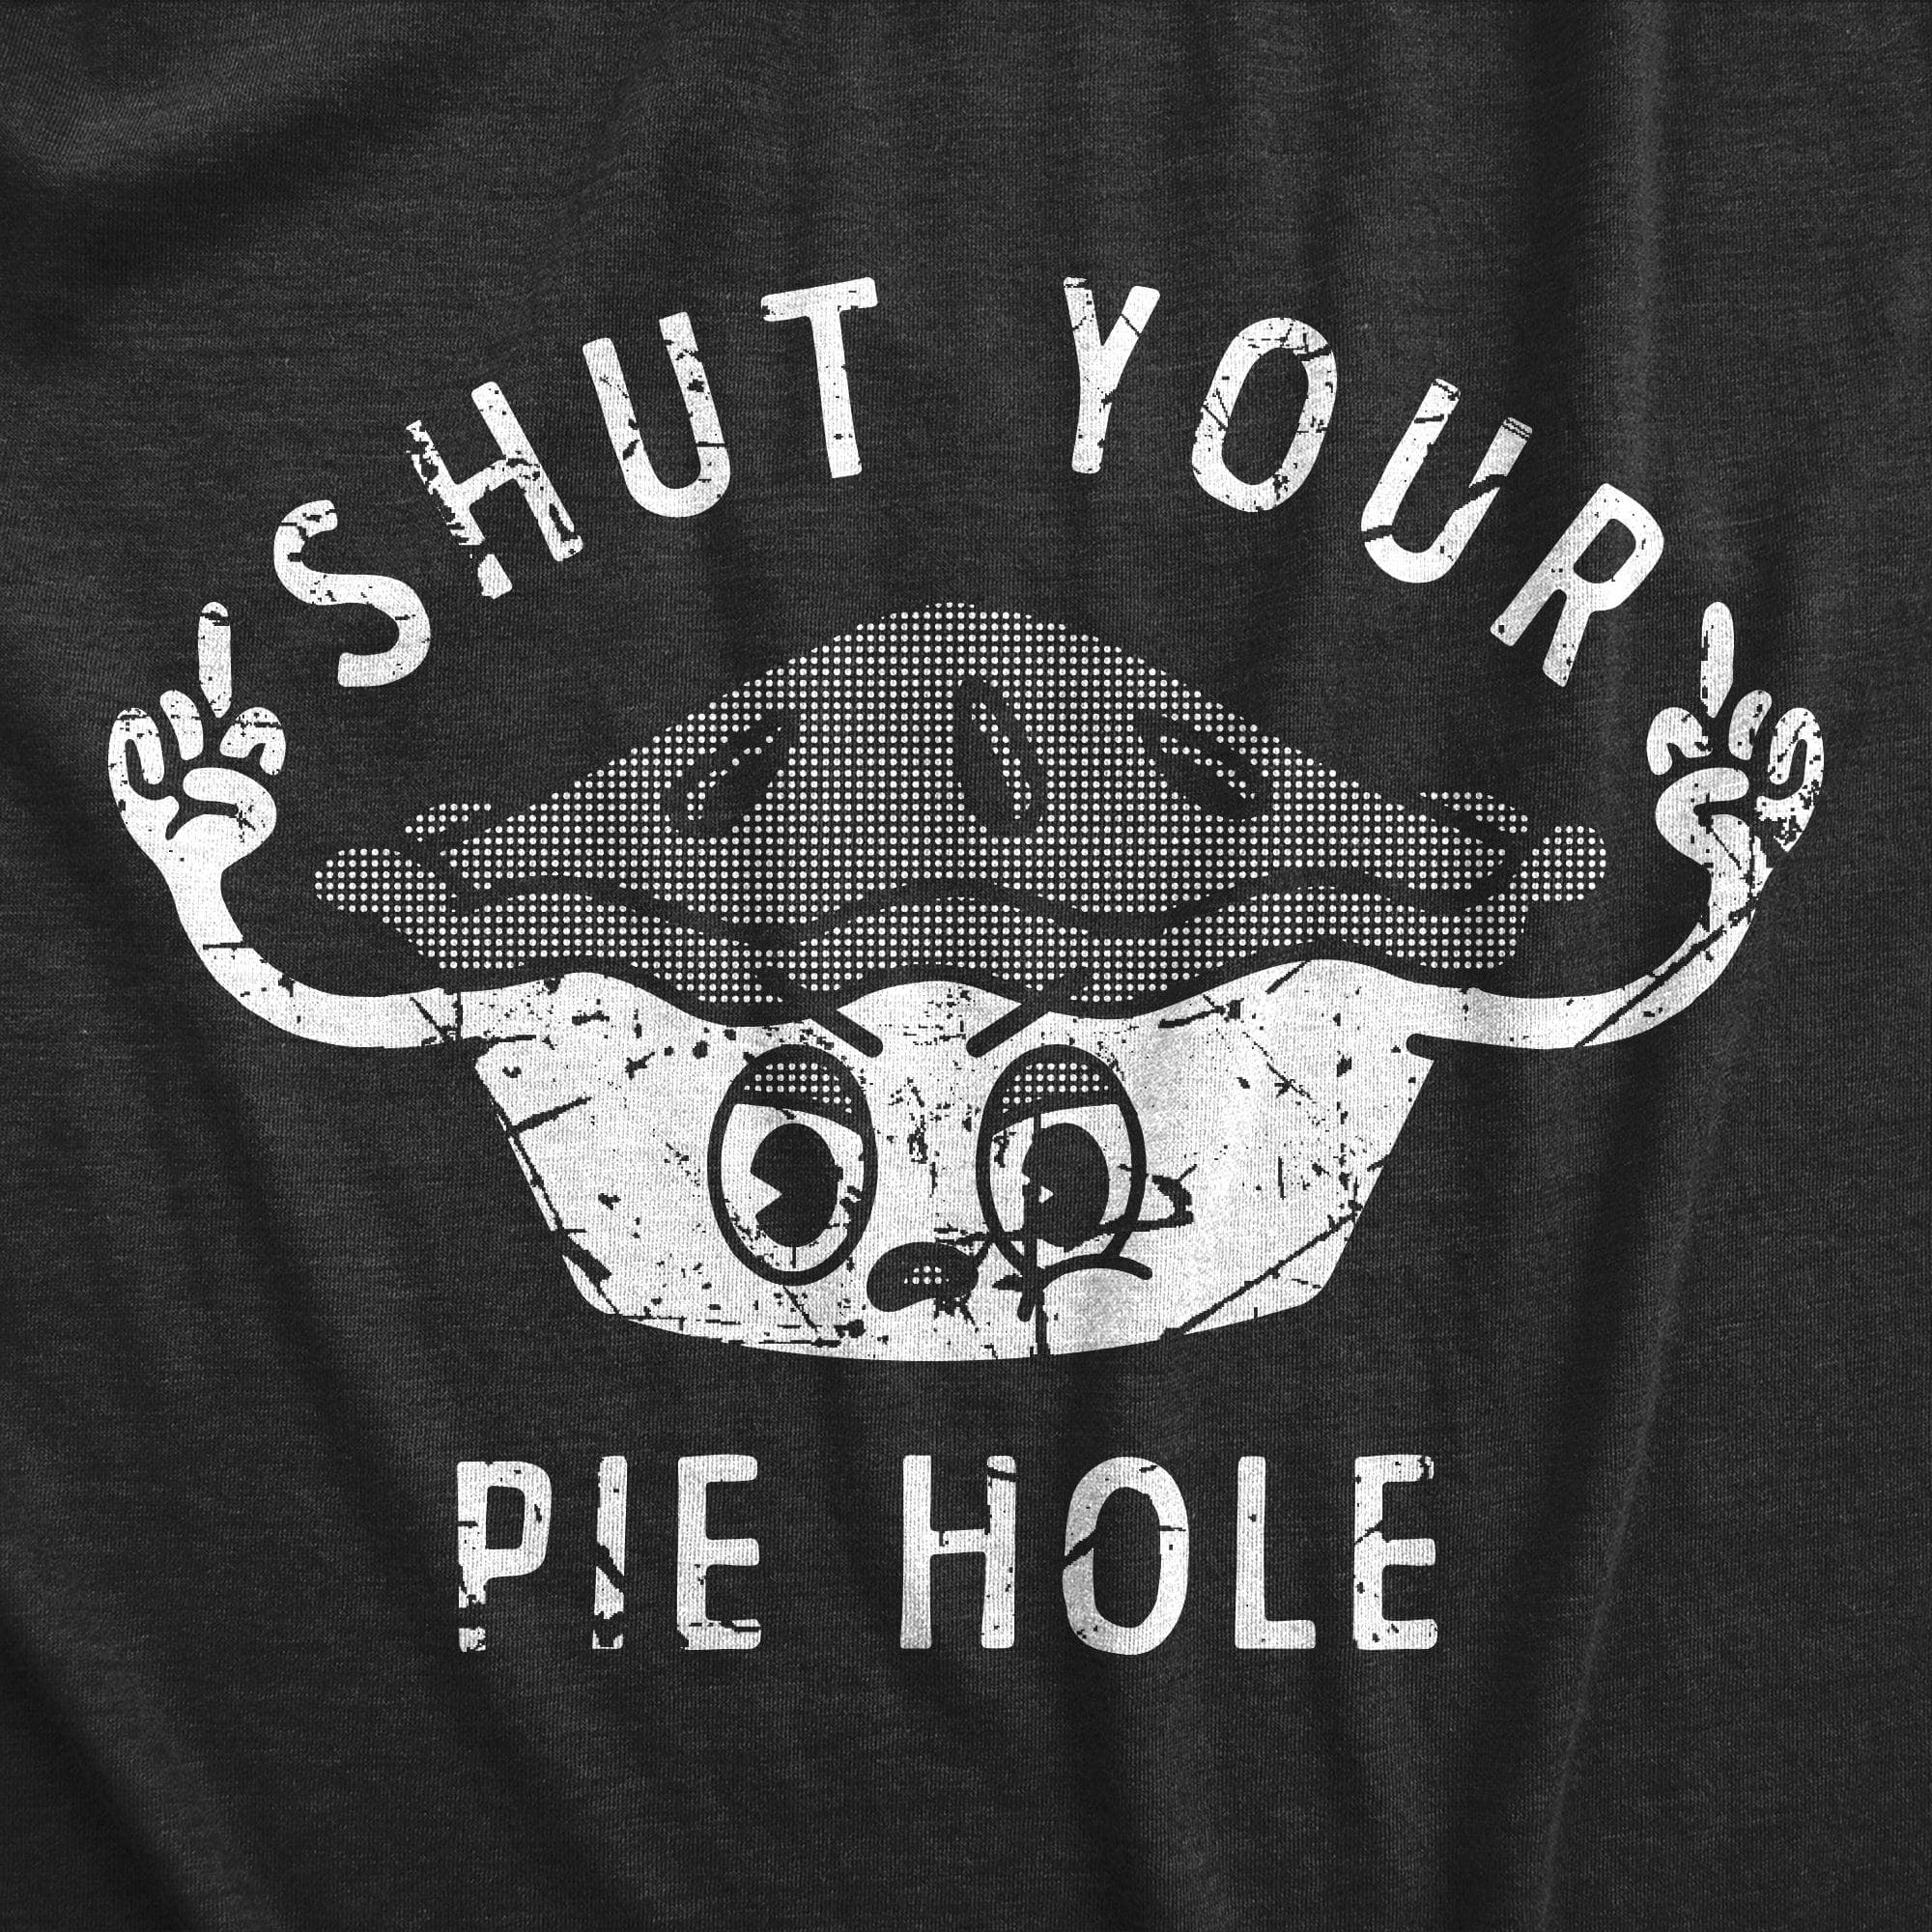 Shut Your Pie Hole Women's Tshirt  -  Crazy Dog T-Shirts